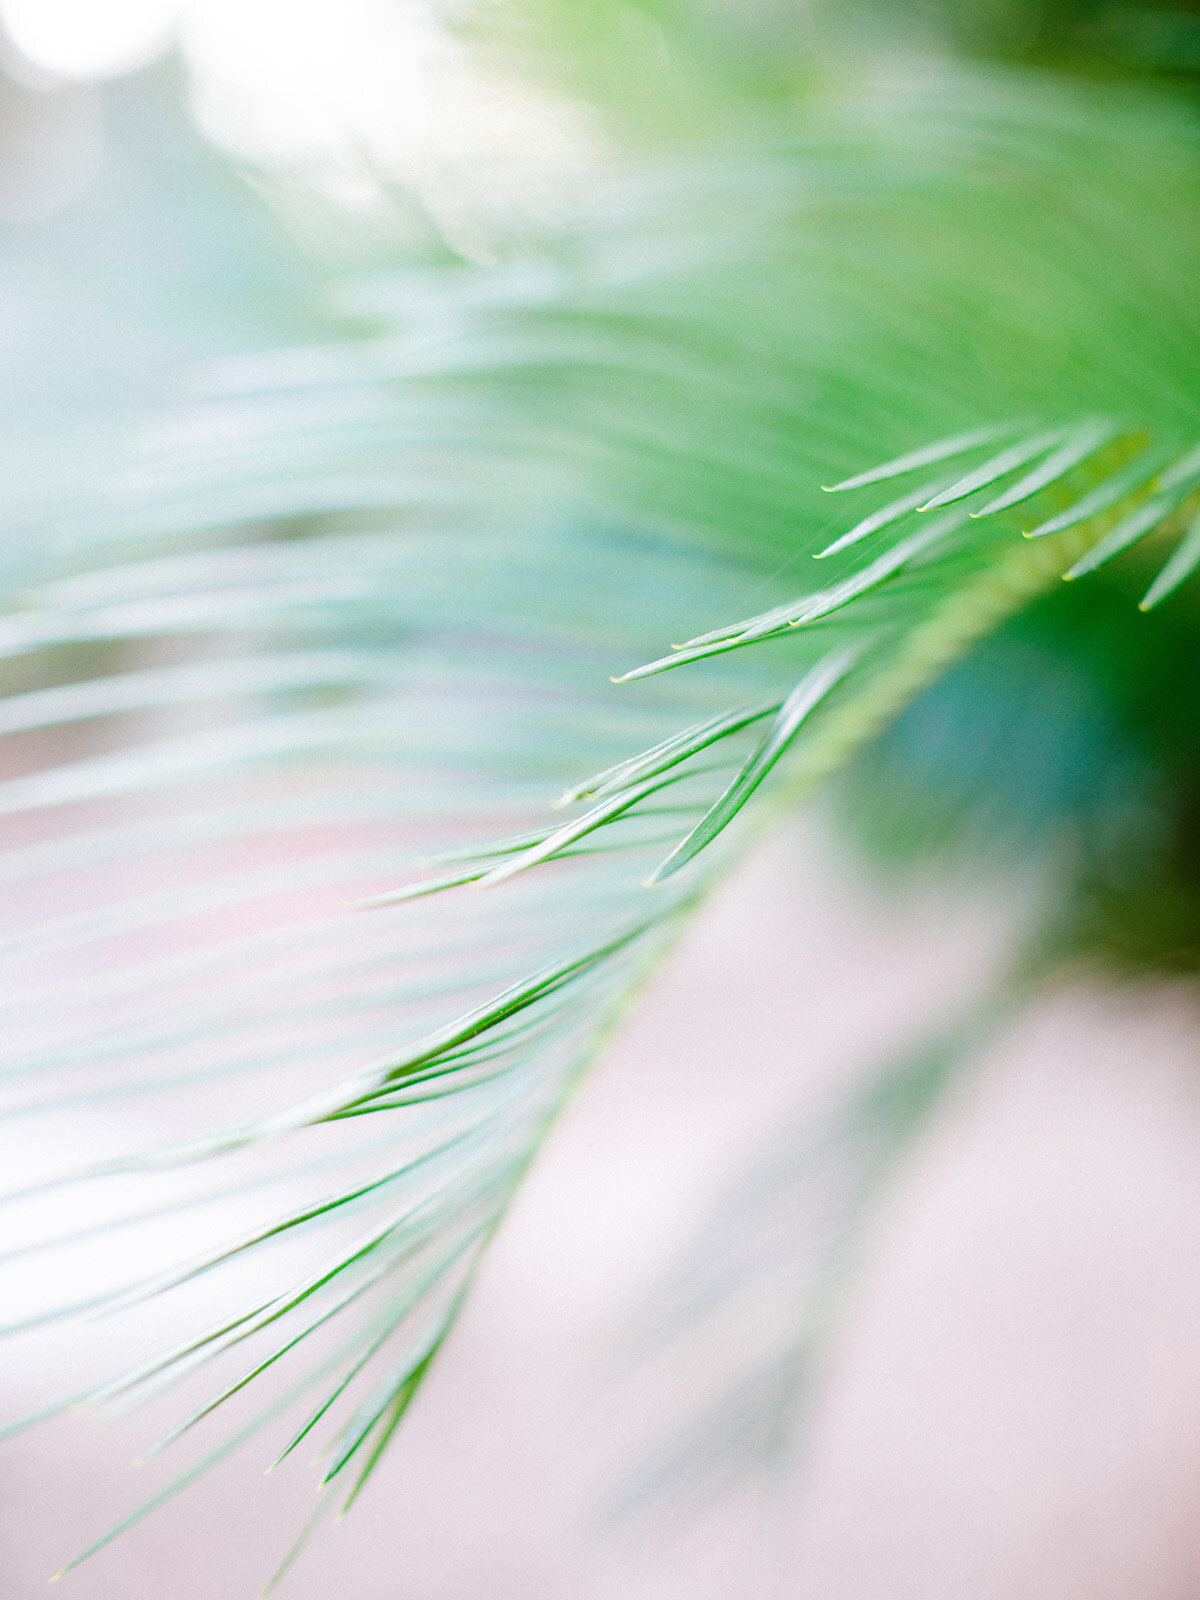 Closeup of Palm Leaf | About St. Pete Rejuvenate